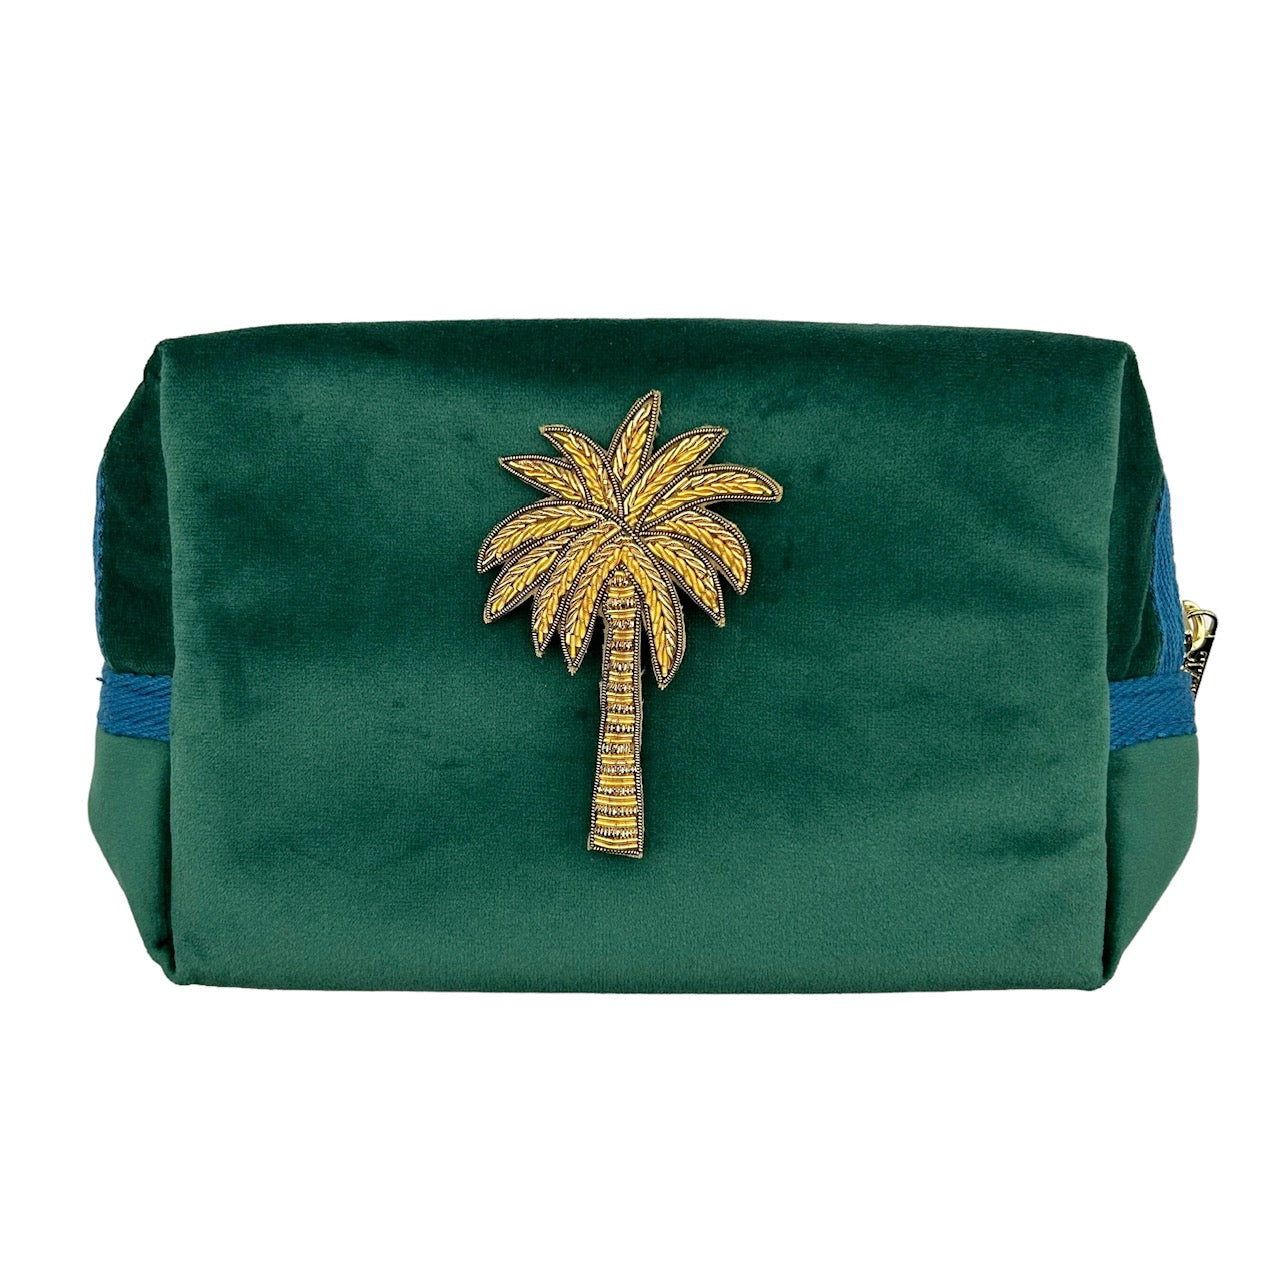 Green make-up bag & gold palm tree - recycled velvet